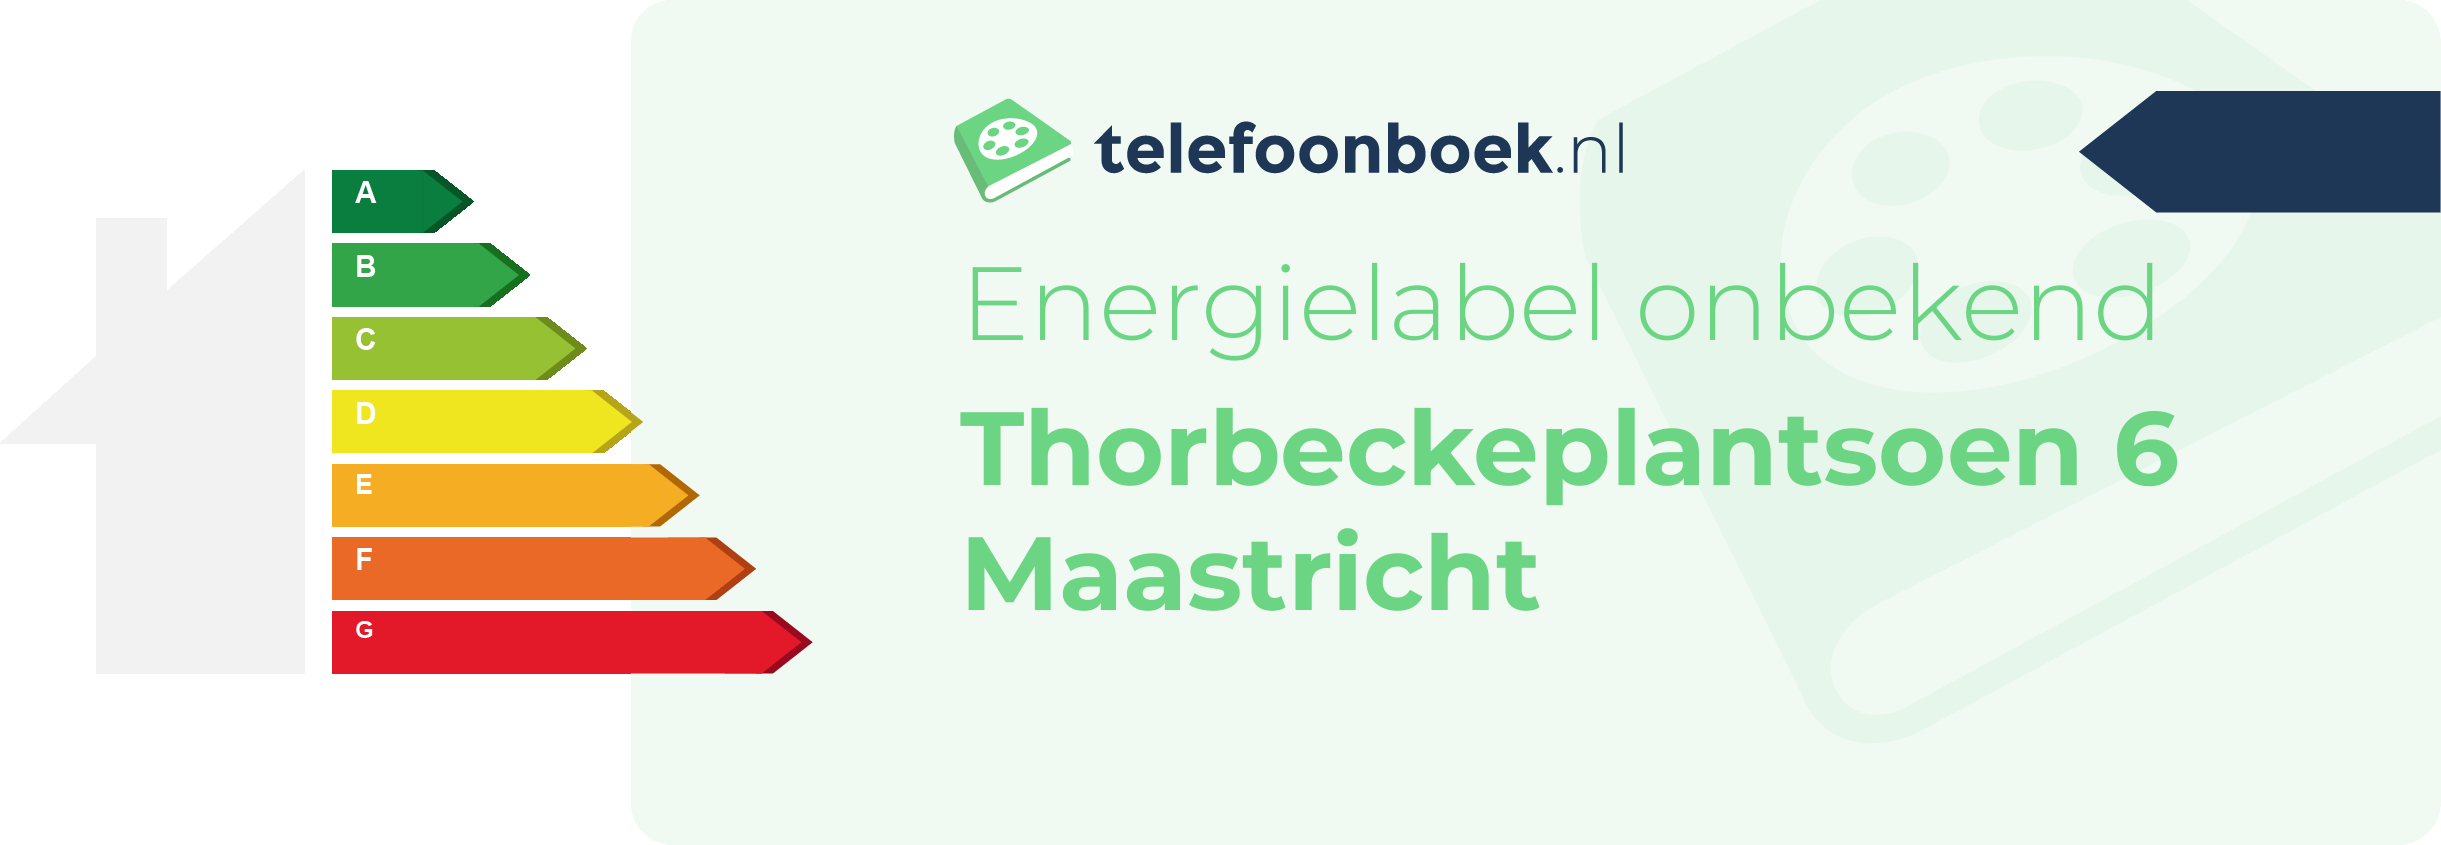 Energielabel Thorbeckeplantsoen 6 Maastricht